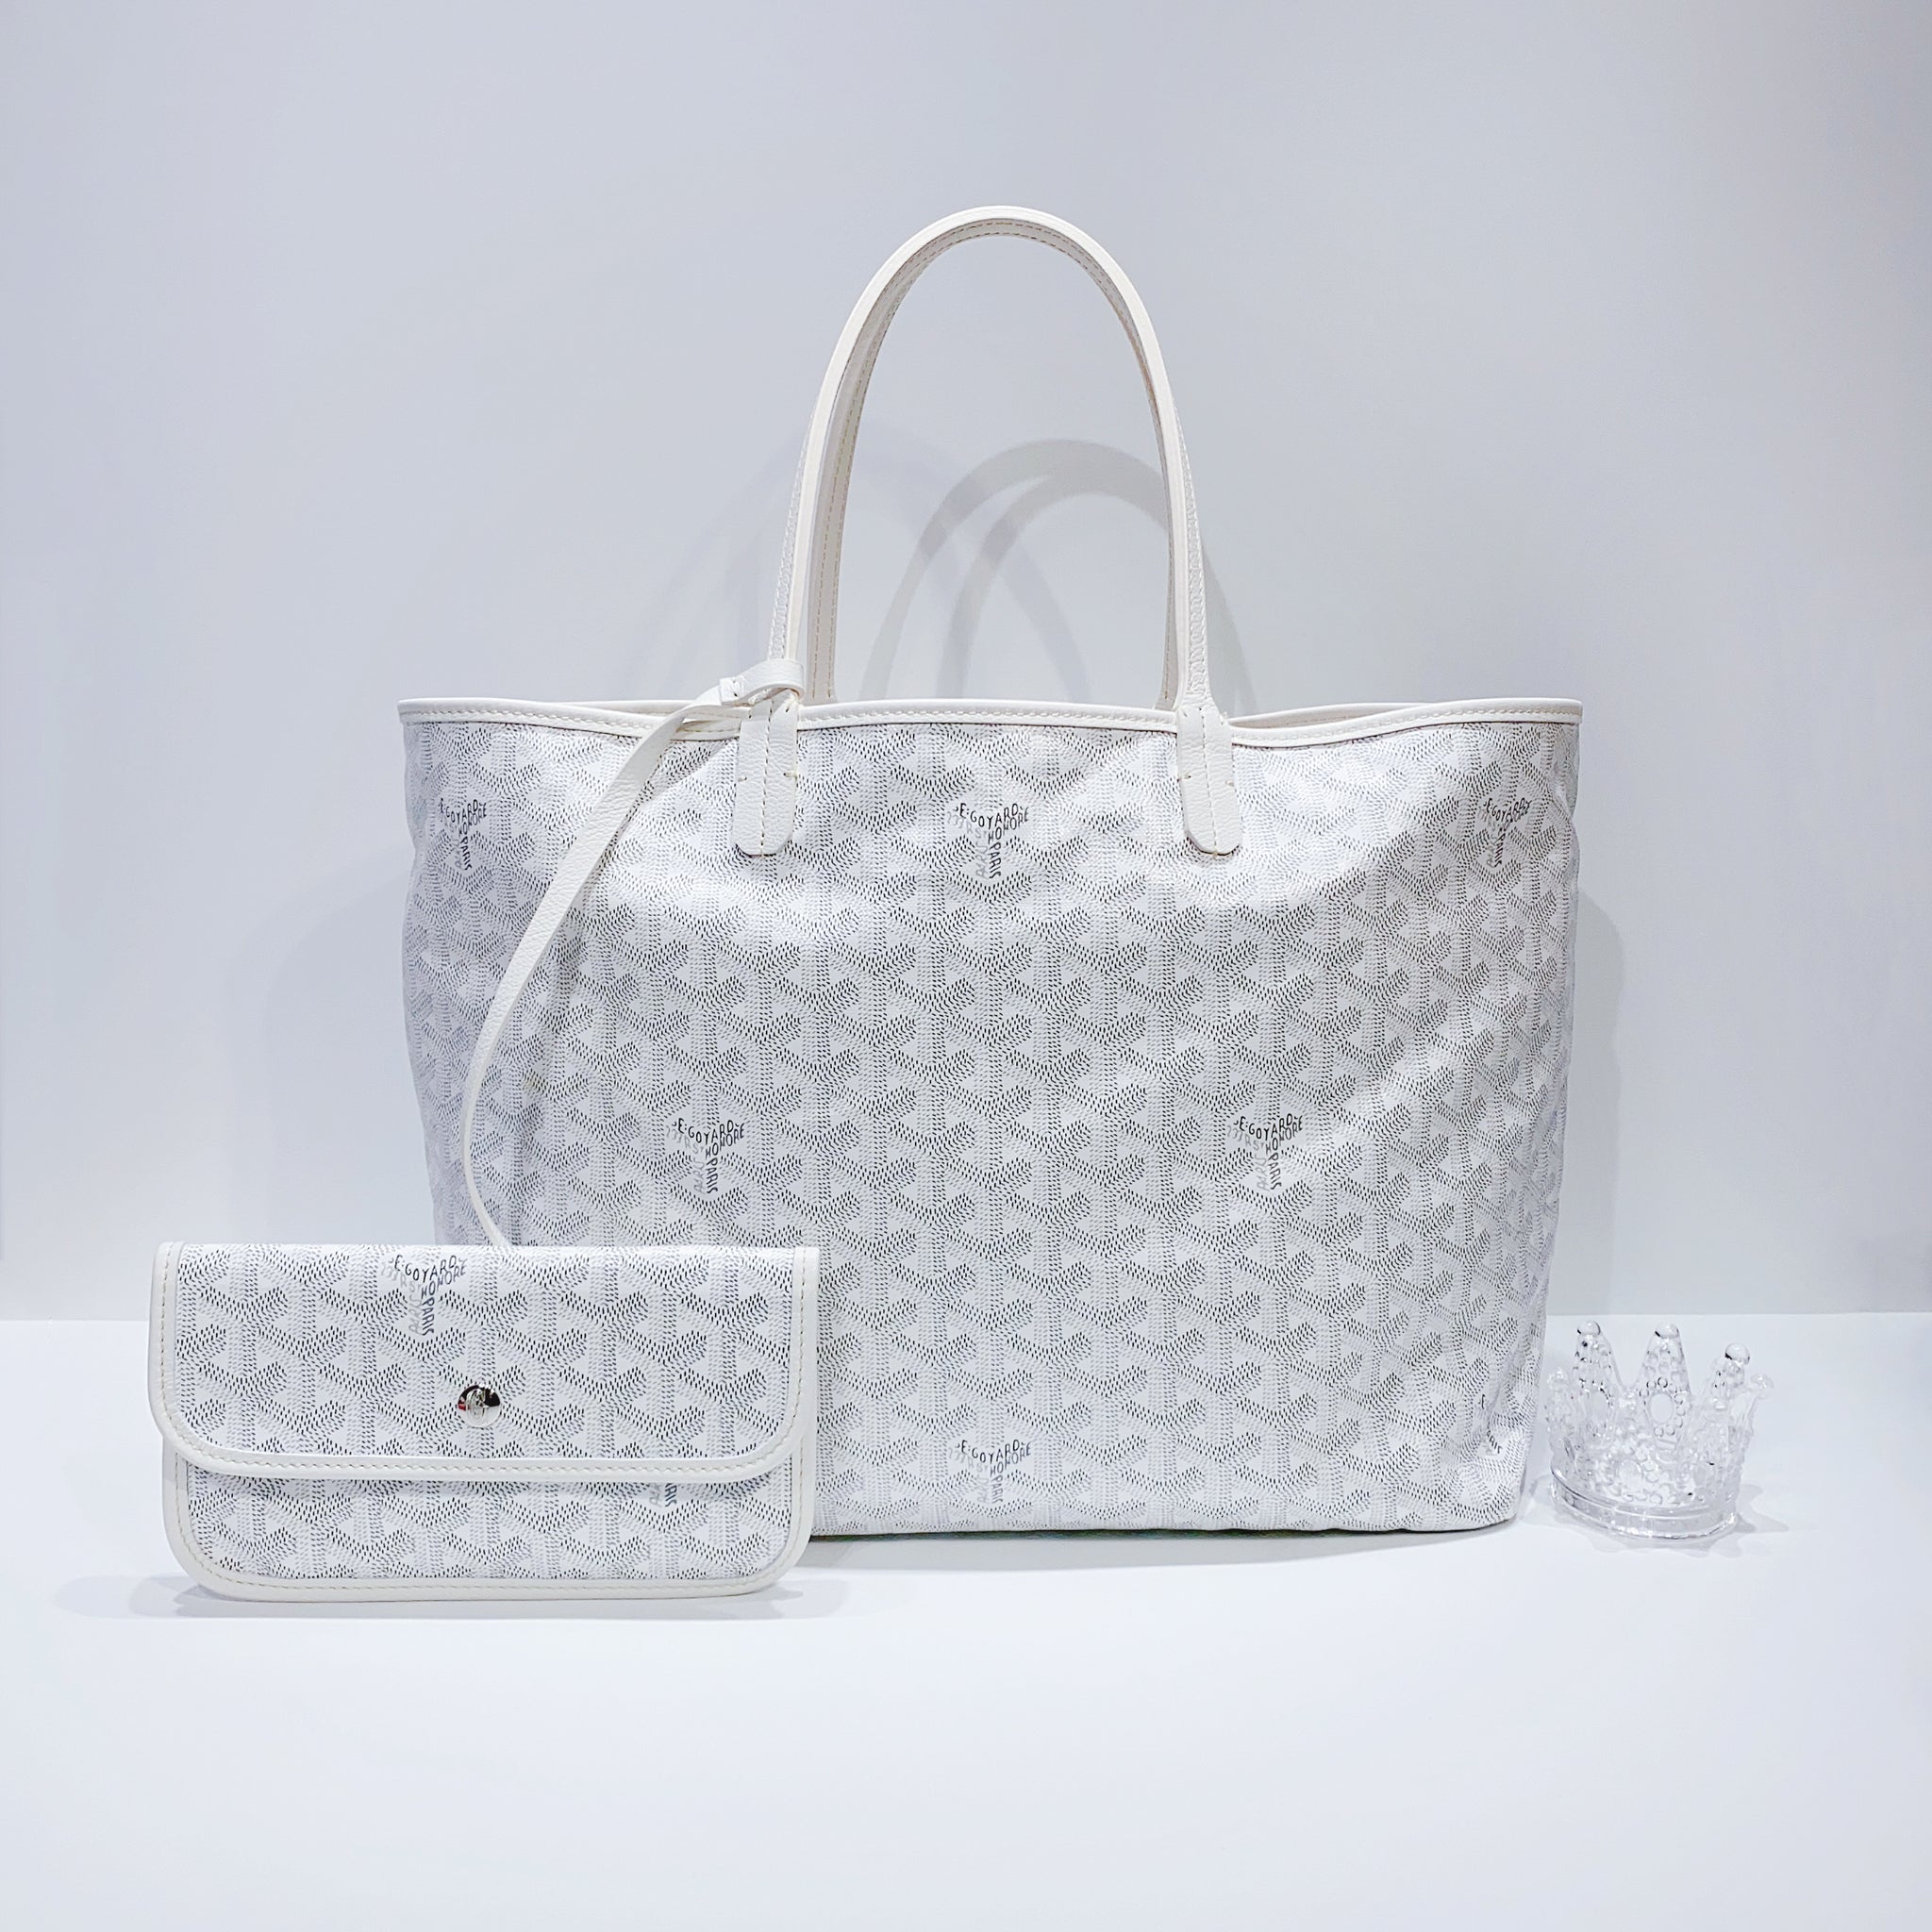 Goyard Goyardine Saint Louis PM w/ Pouch - White Totes, Handbags